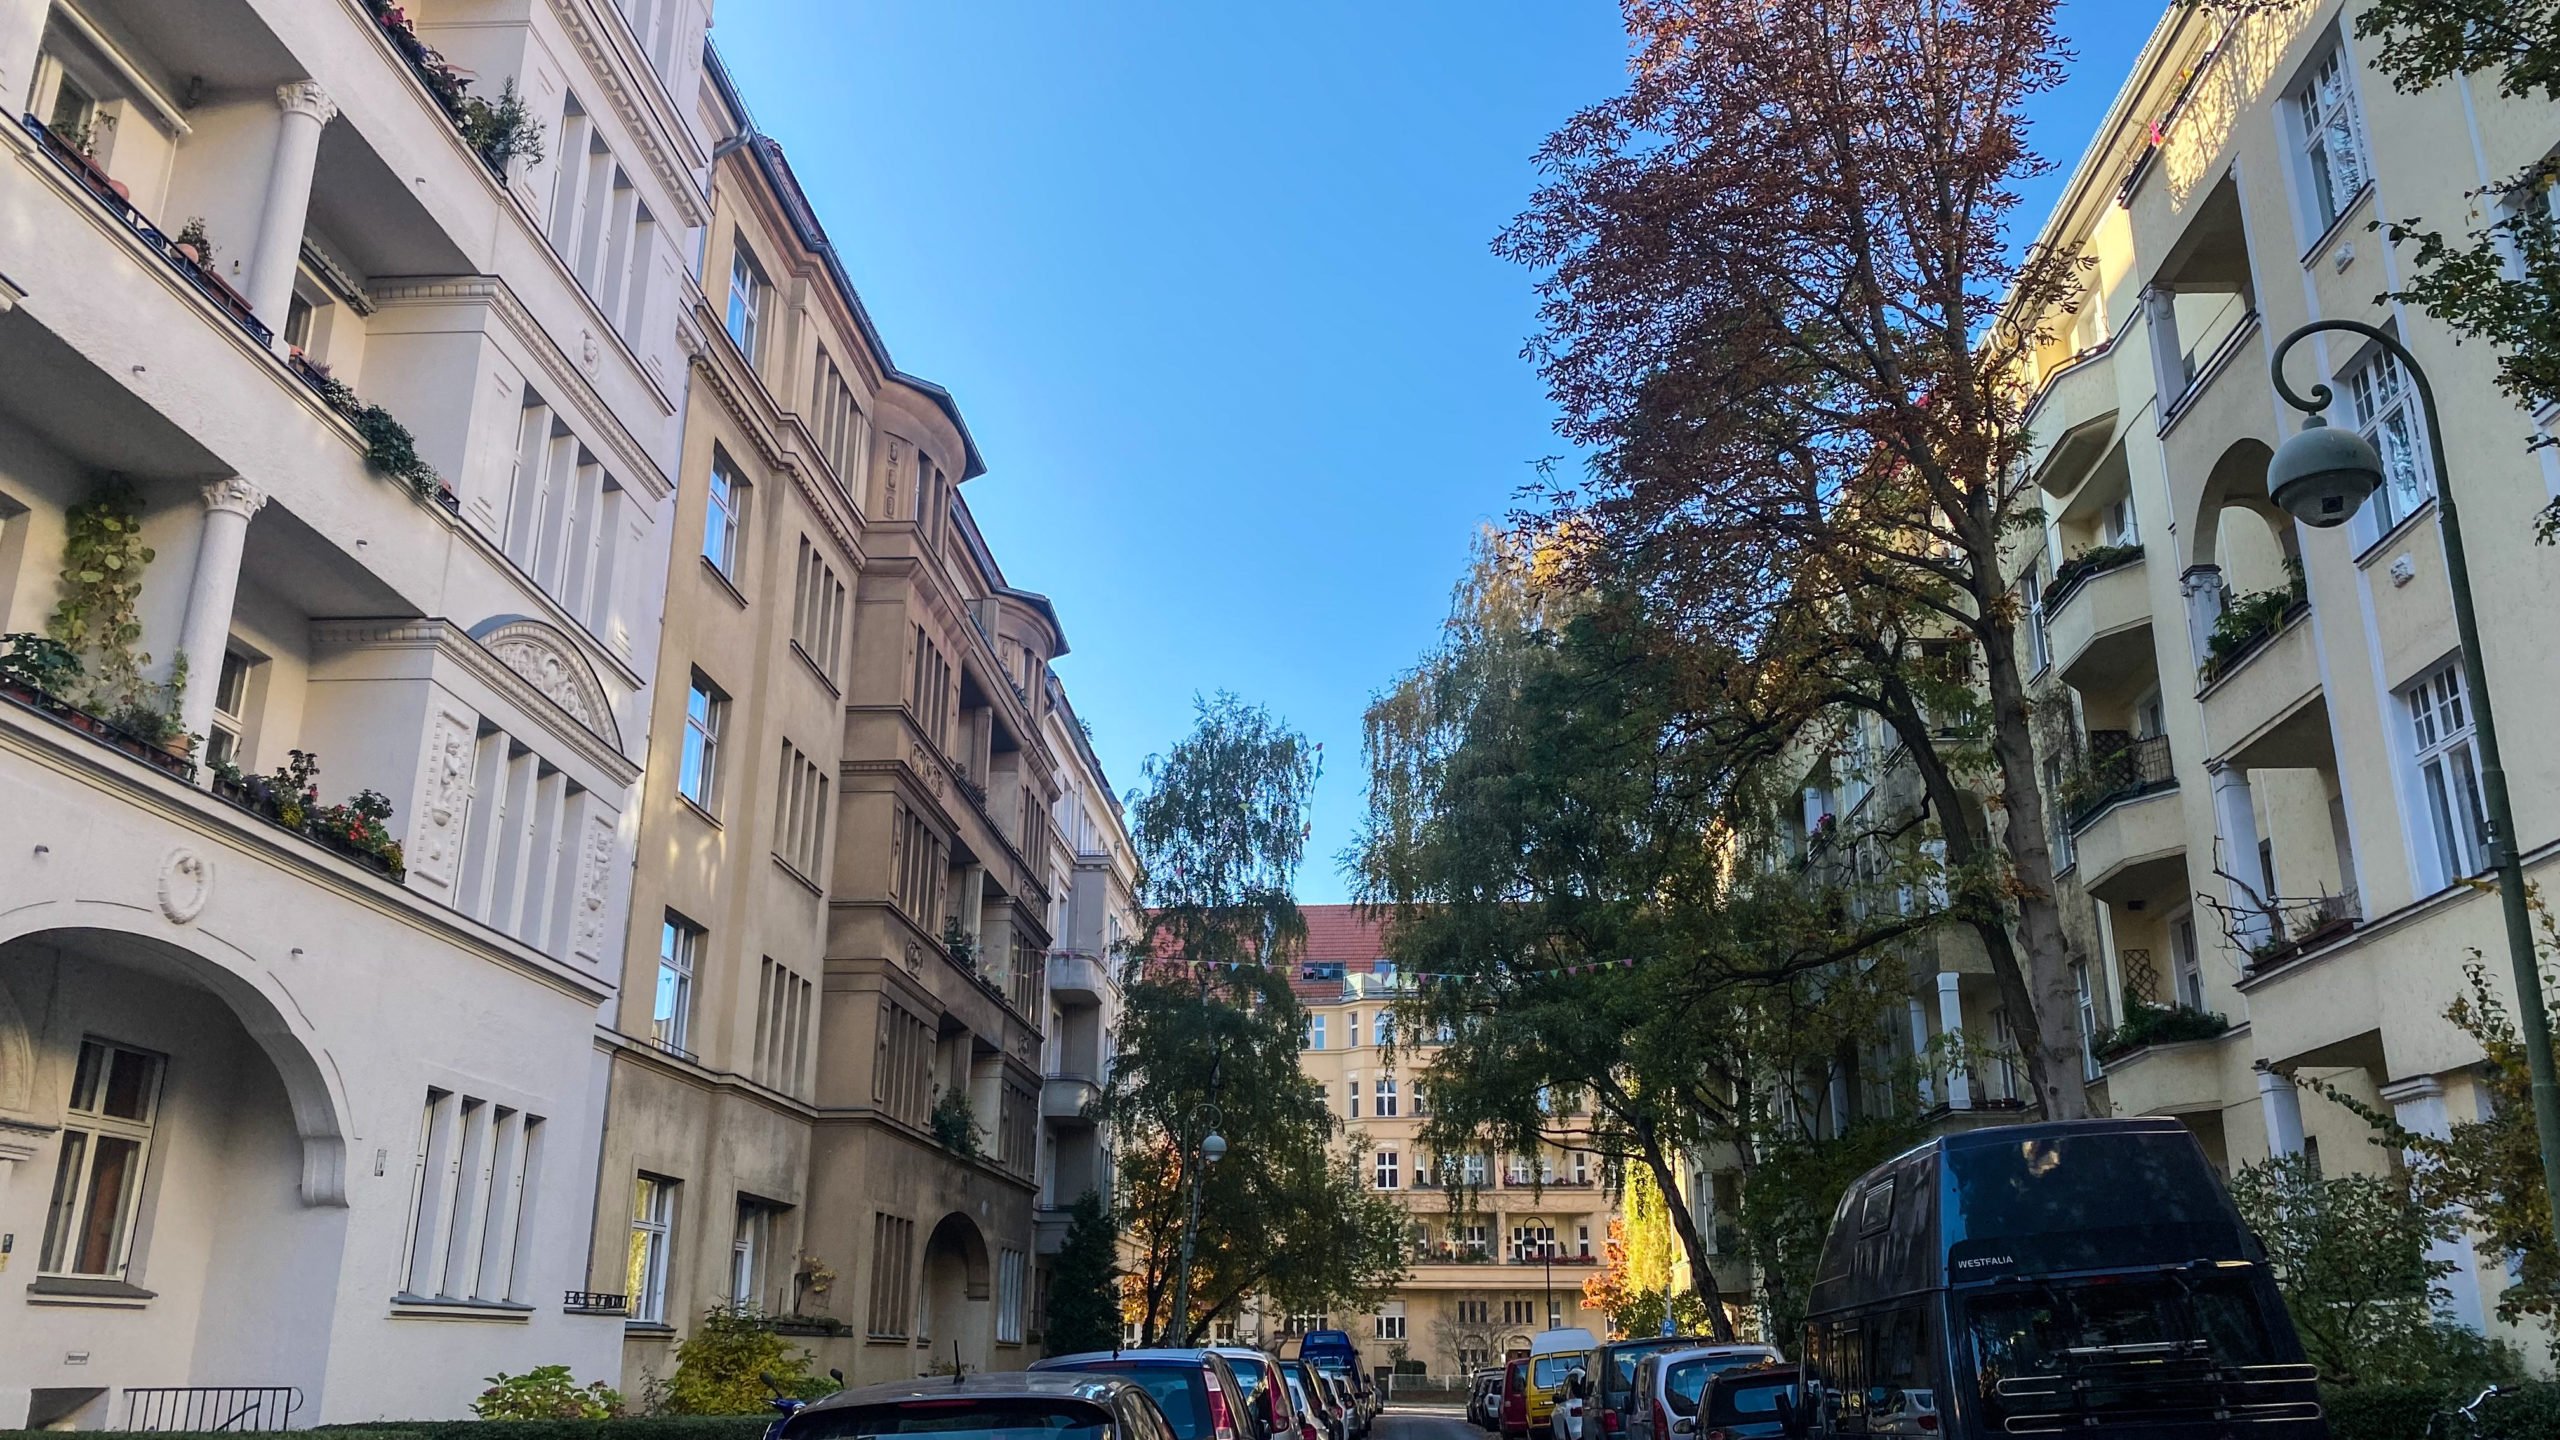 schöne Straßen in Berlin Schöne Altbaufassaden in Terracotta-Tönen: Die Burgherrenstraße in Tempelhof prseäntiert sich ruhig und etwas versteckt unweit vom stark befahrenen Tempelhofer Damm.